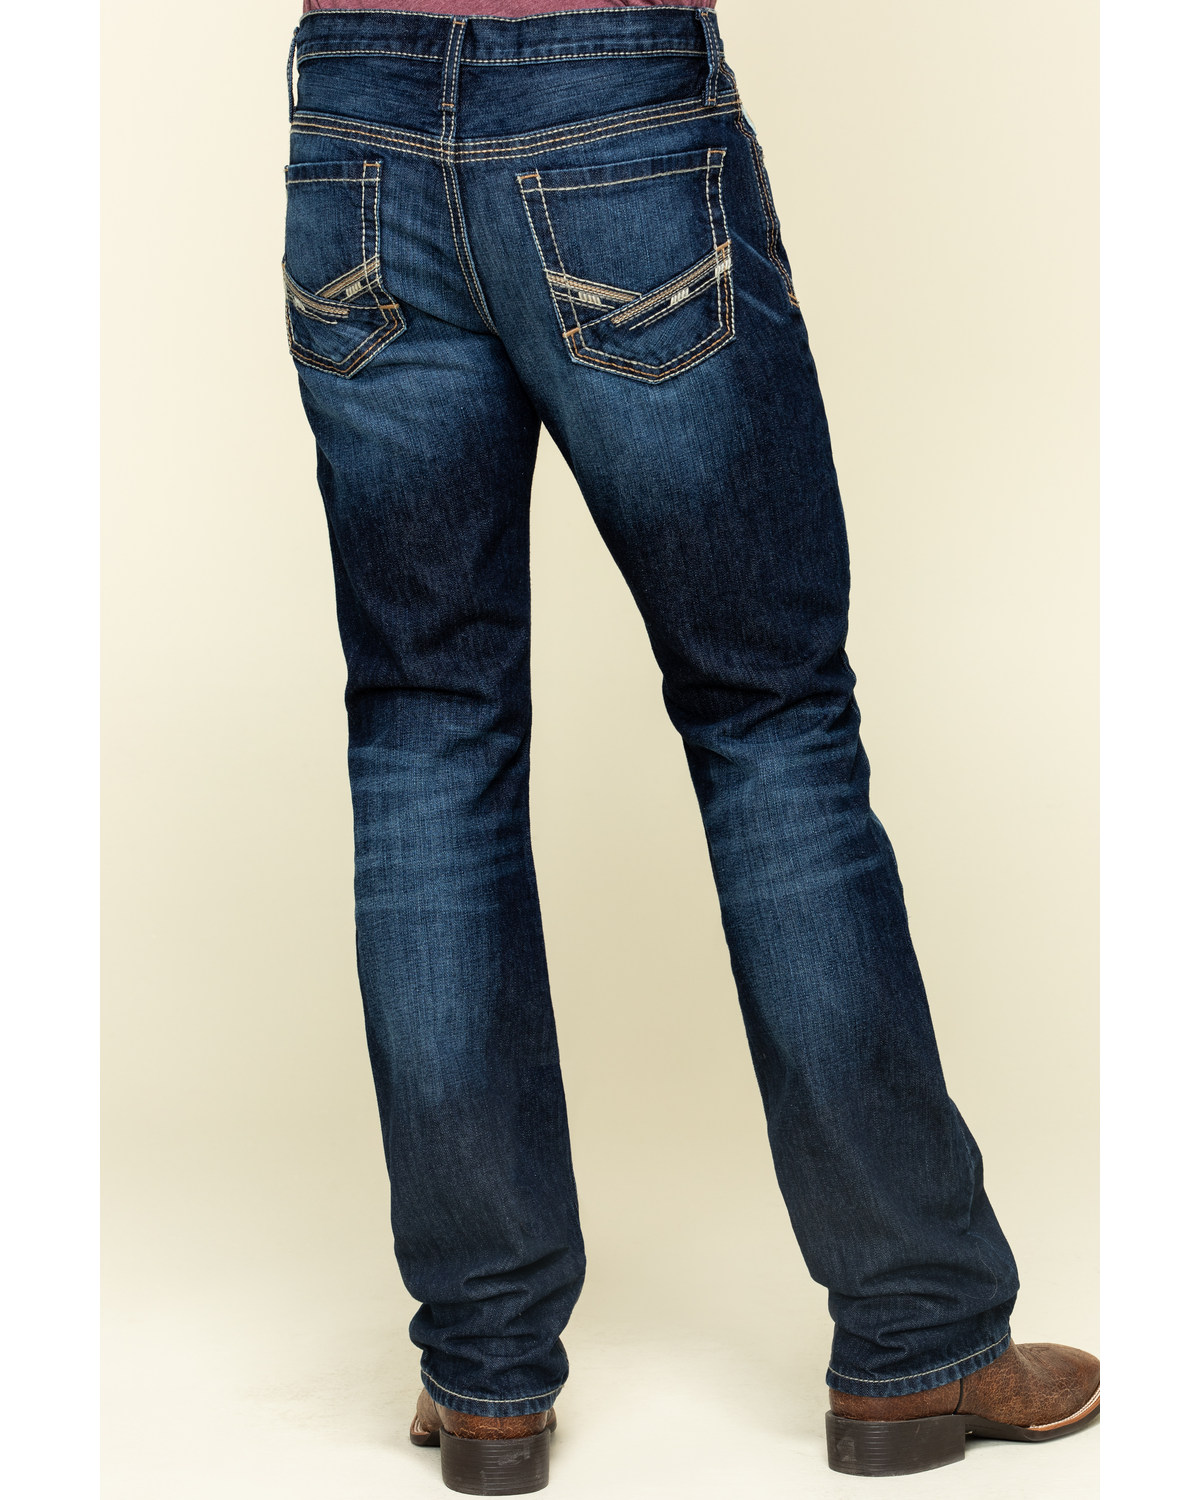 cinch jeans for men